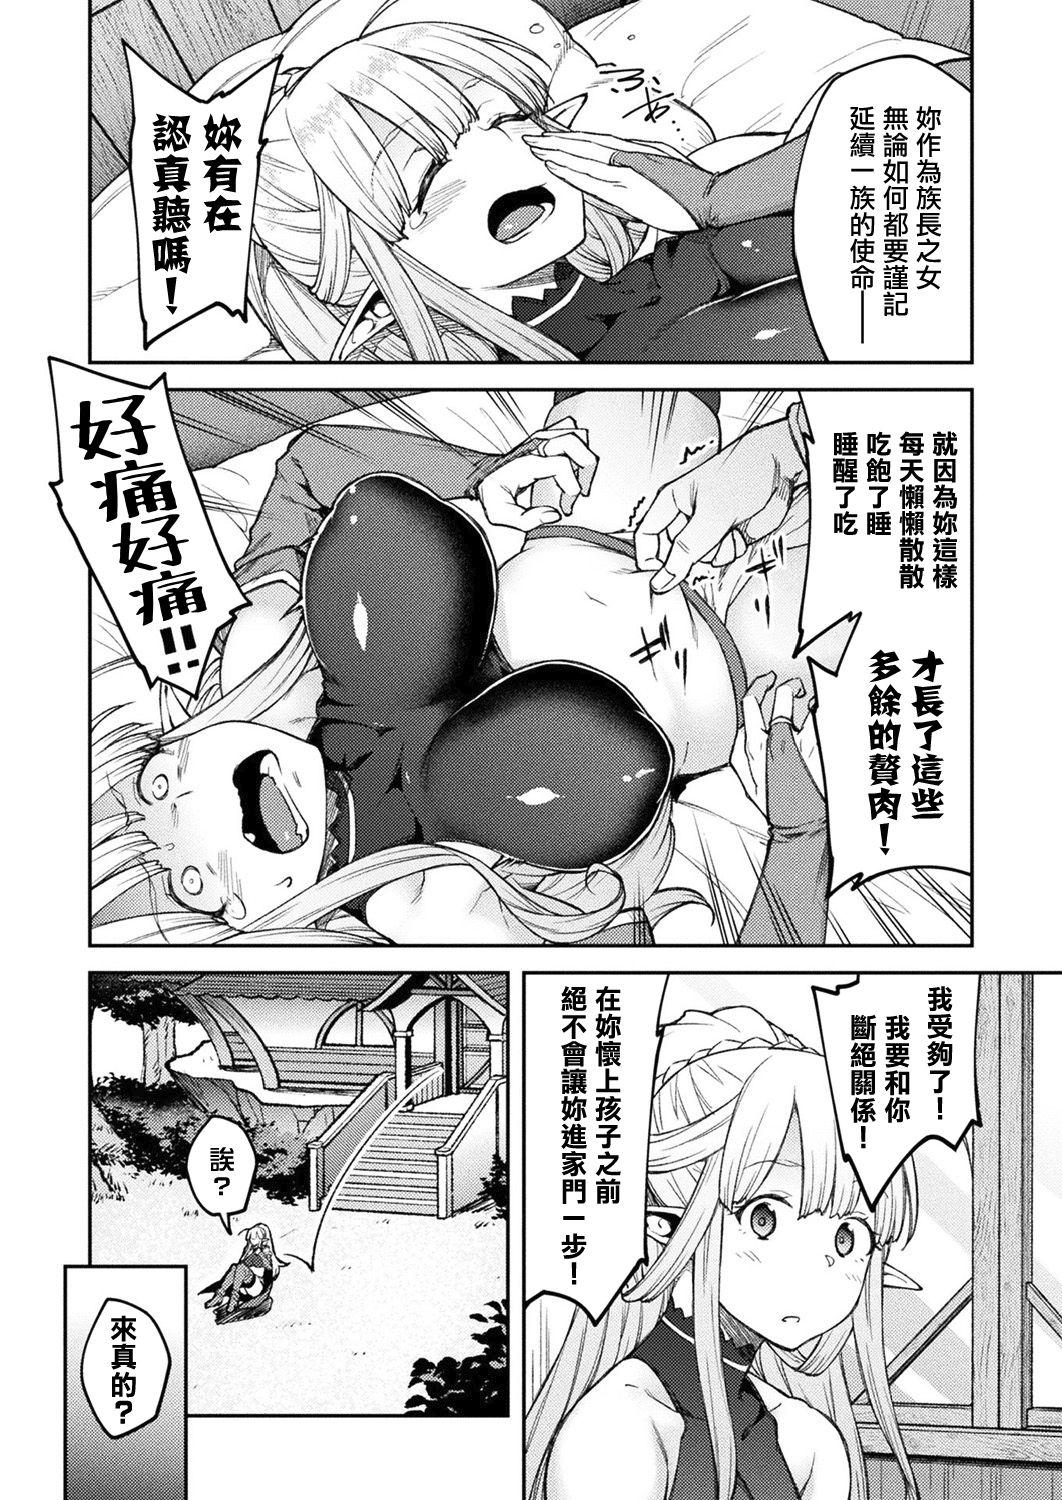 Suck Cock Himono Elf, Kozukuri o Suru. Tattooed - Page 2